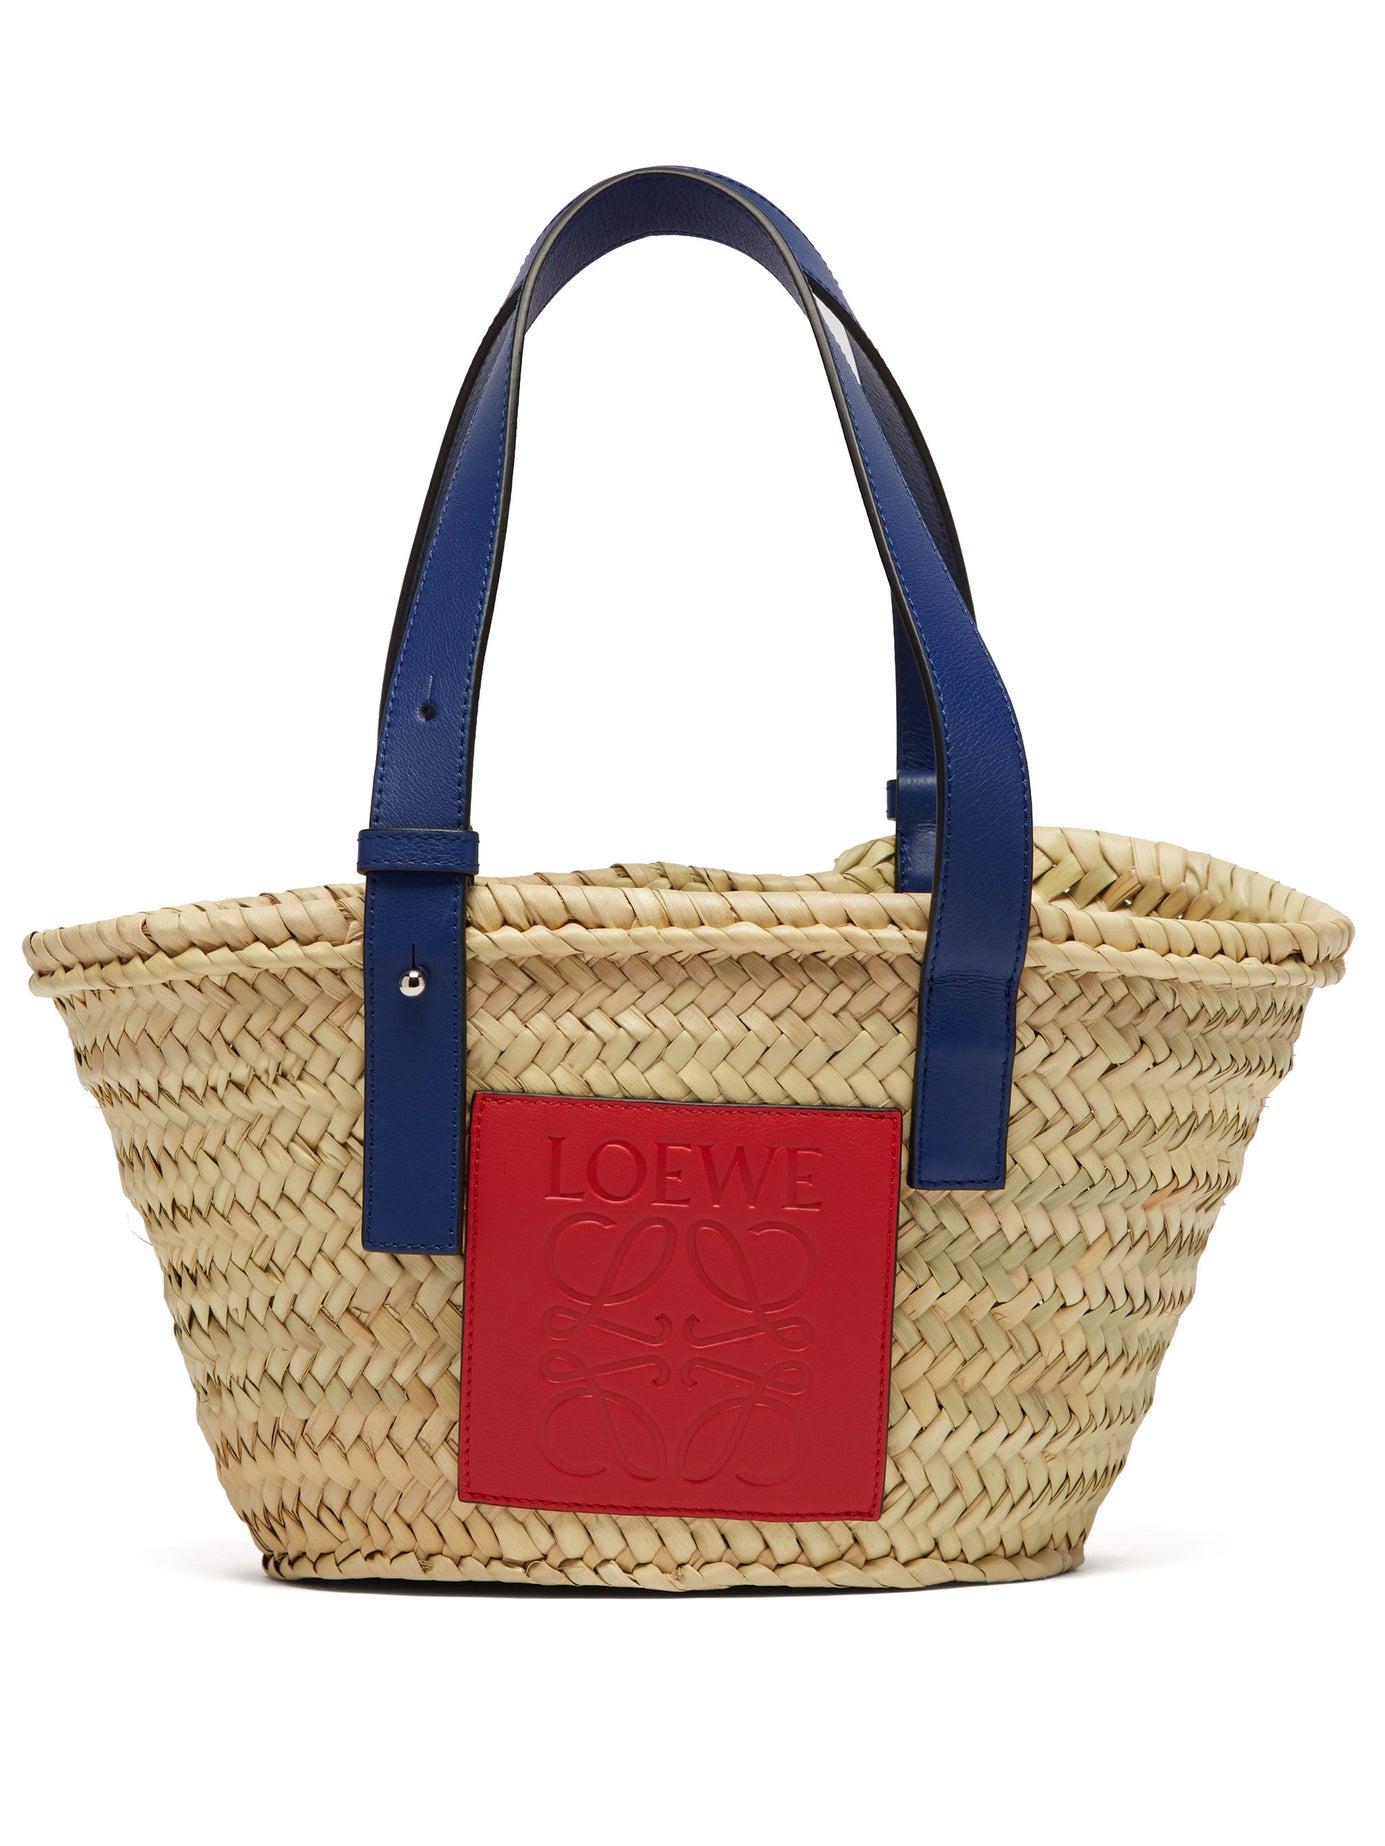 Basket raffia tote bag by Loewe